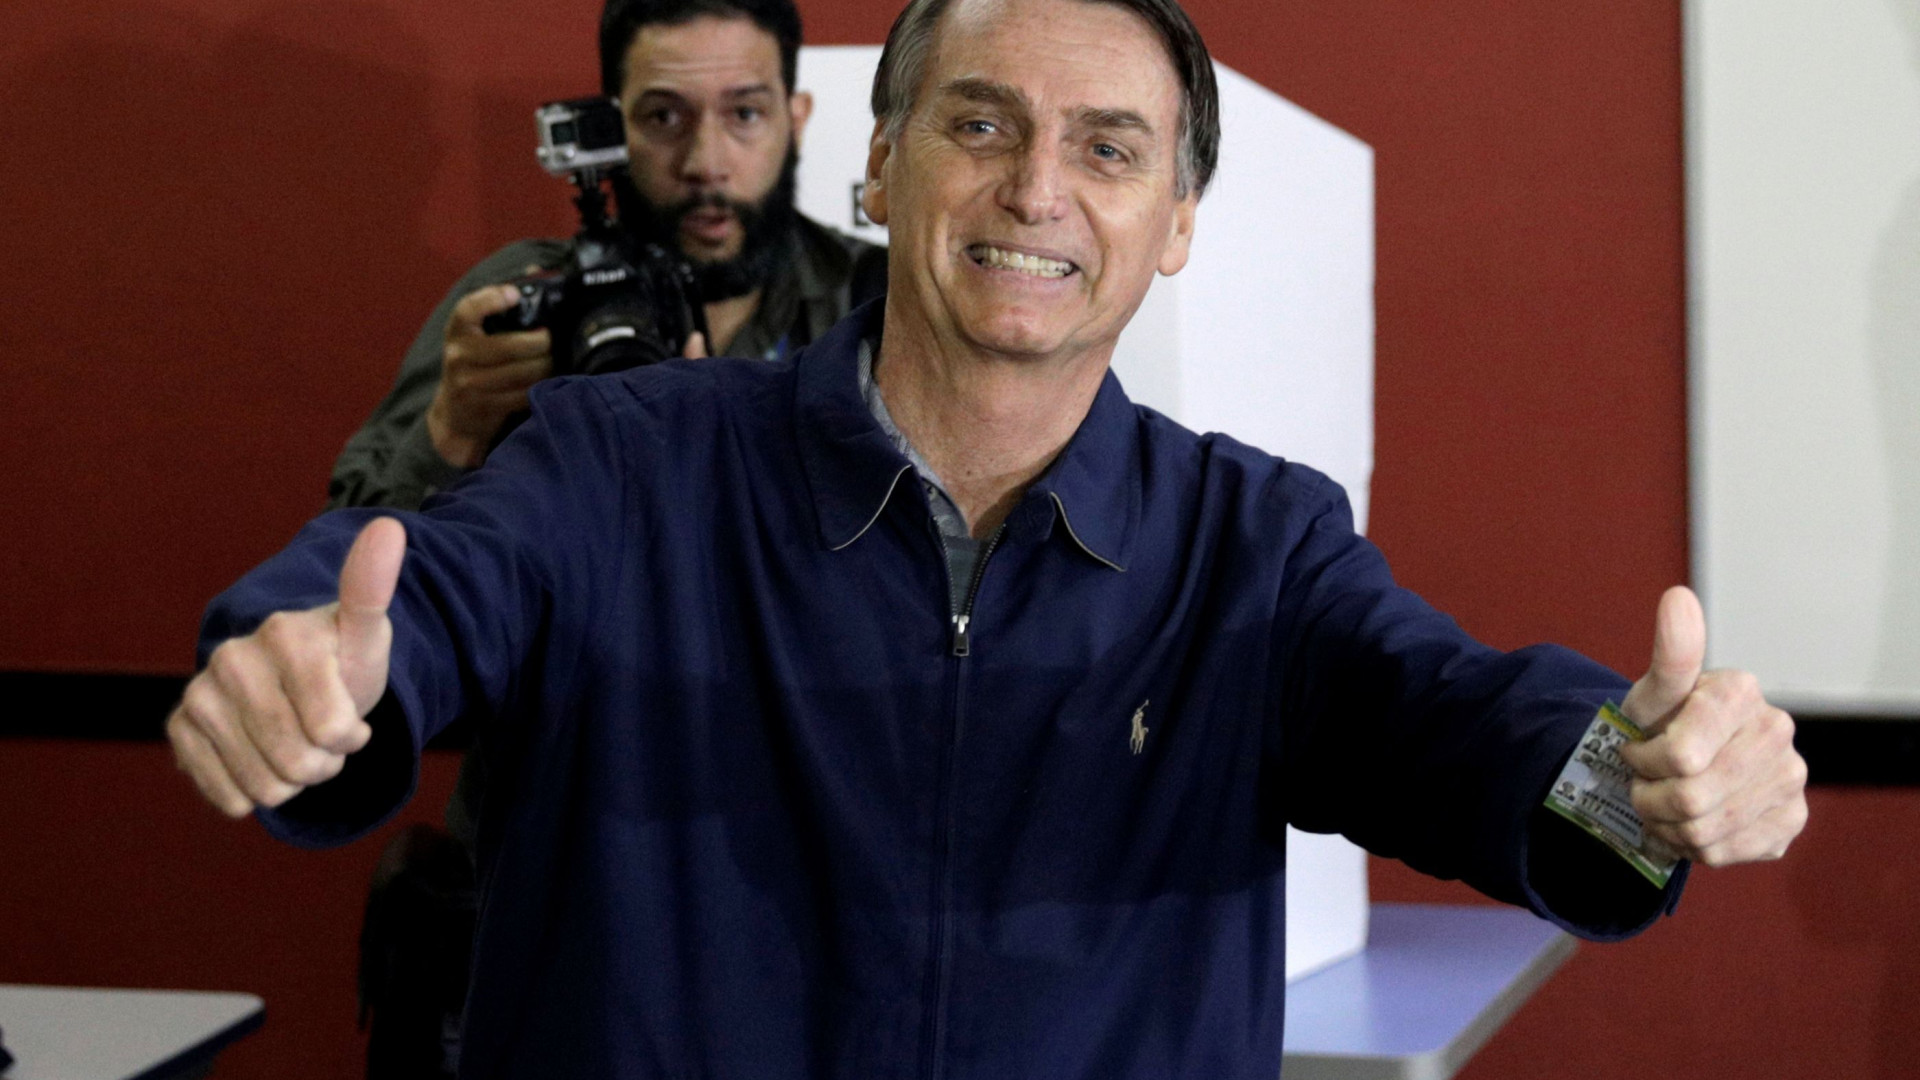 Católico, Bolsonaro investe em pauta evangélica e explode em segmento